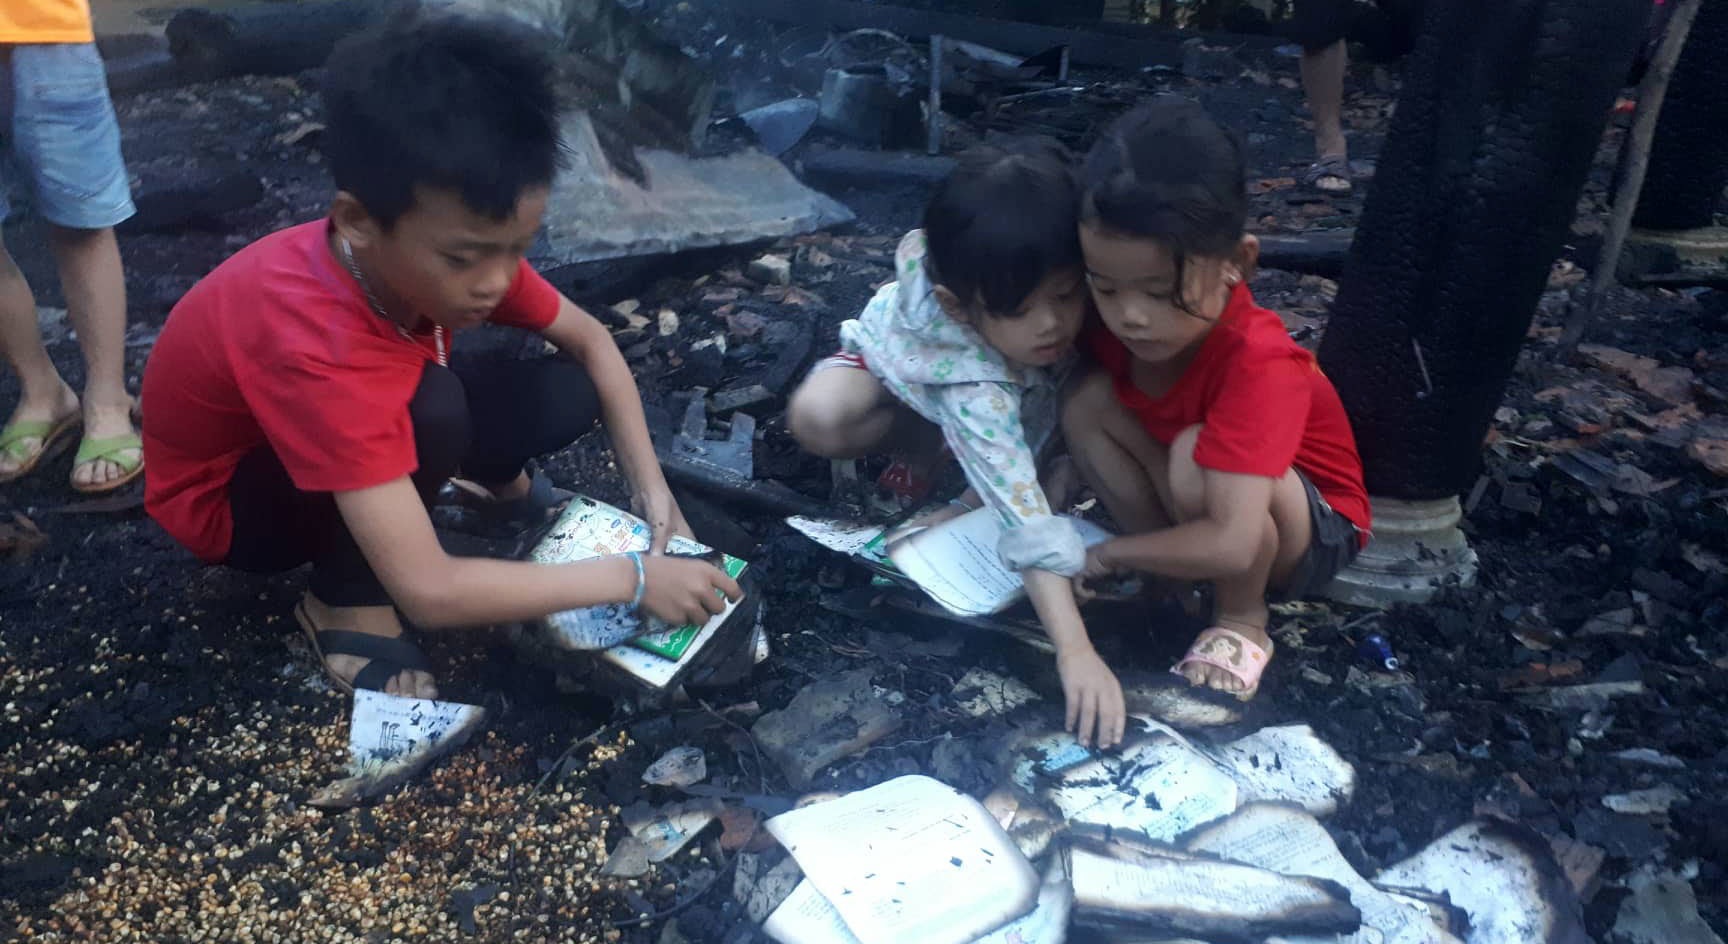 ách vở đồ dùng học tập của các con anh Hà bị đốt cháy, 3 đứa trẻ bới tro nhặt lại những trang sách cháy dở